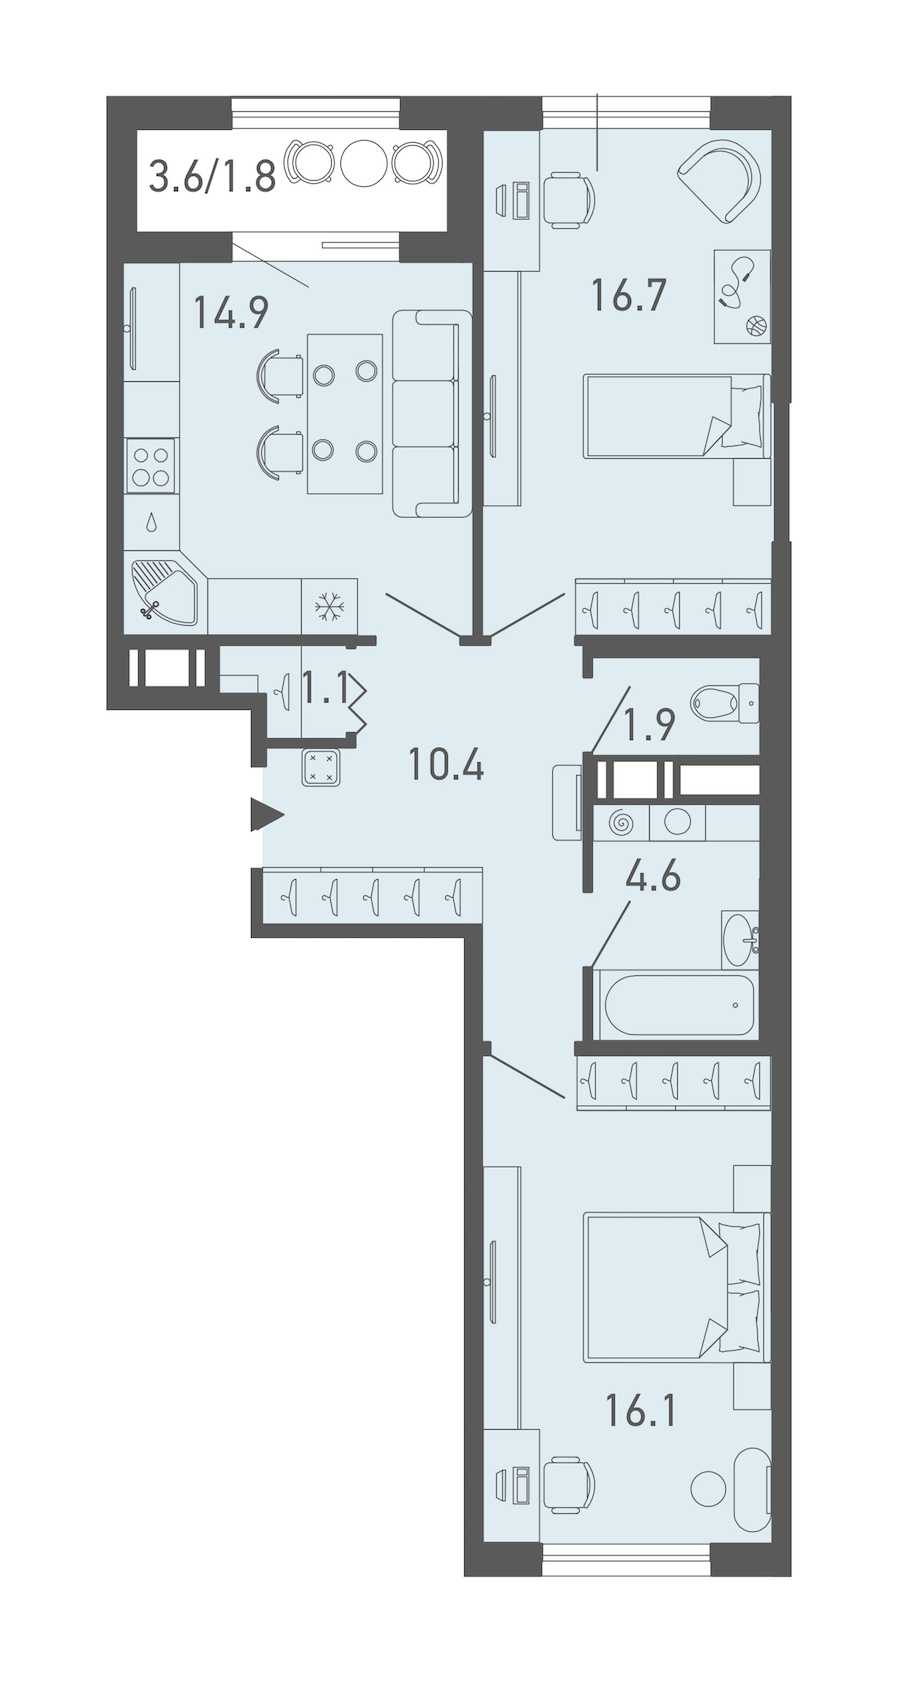 Двухкомнатная квартира в Эталон ЛенСпецСМУ: площадь 67.5 м2 , этаж: 3 – купить в Санкт-Петербурге